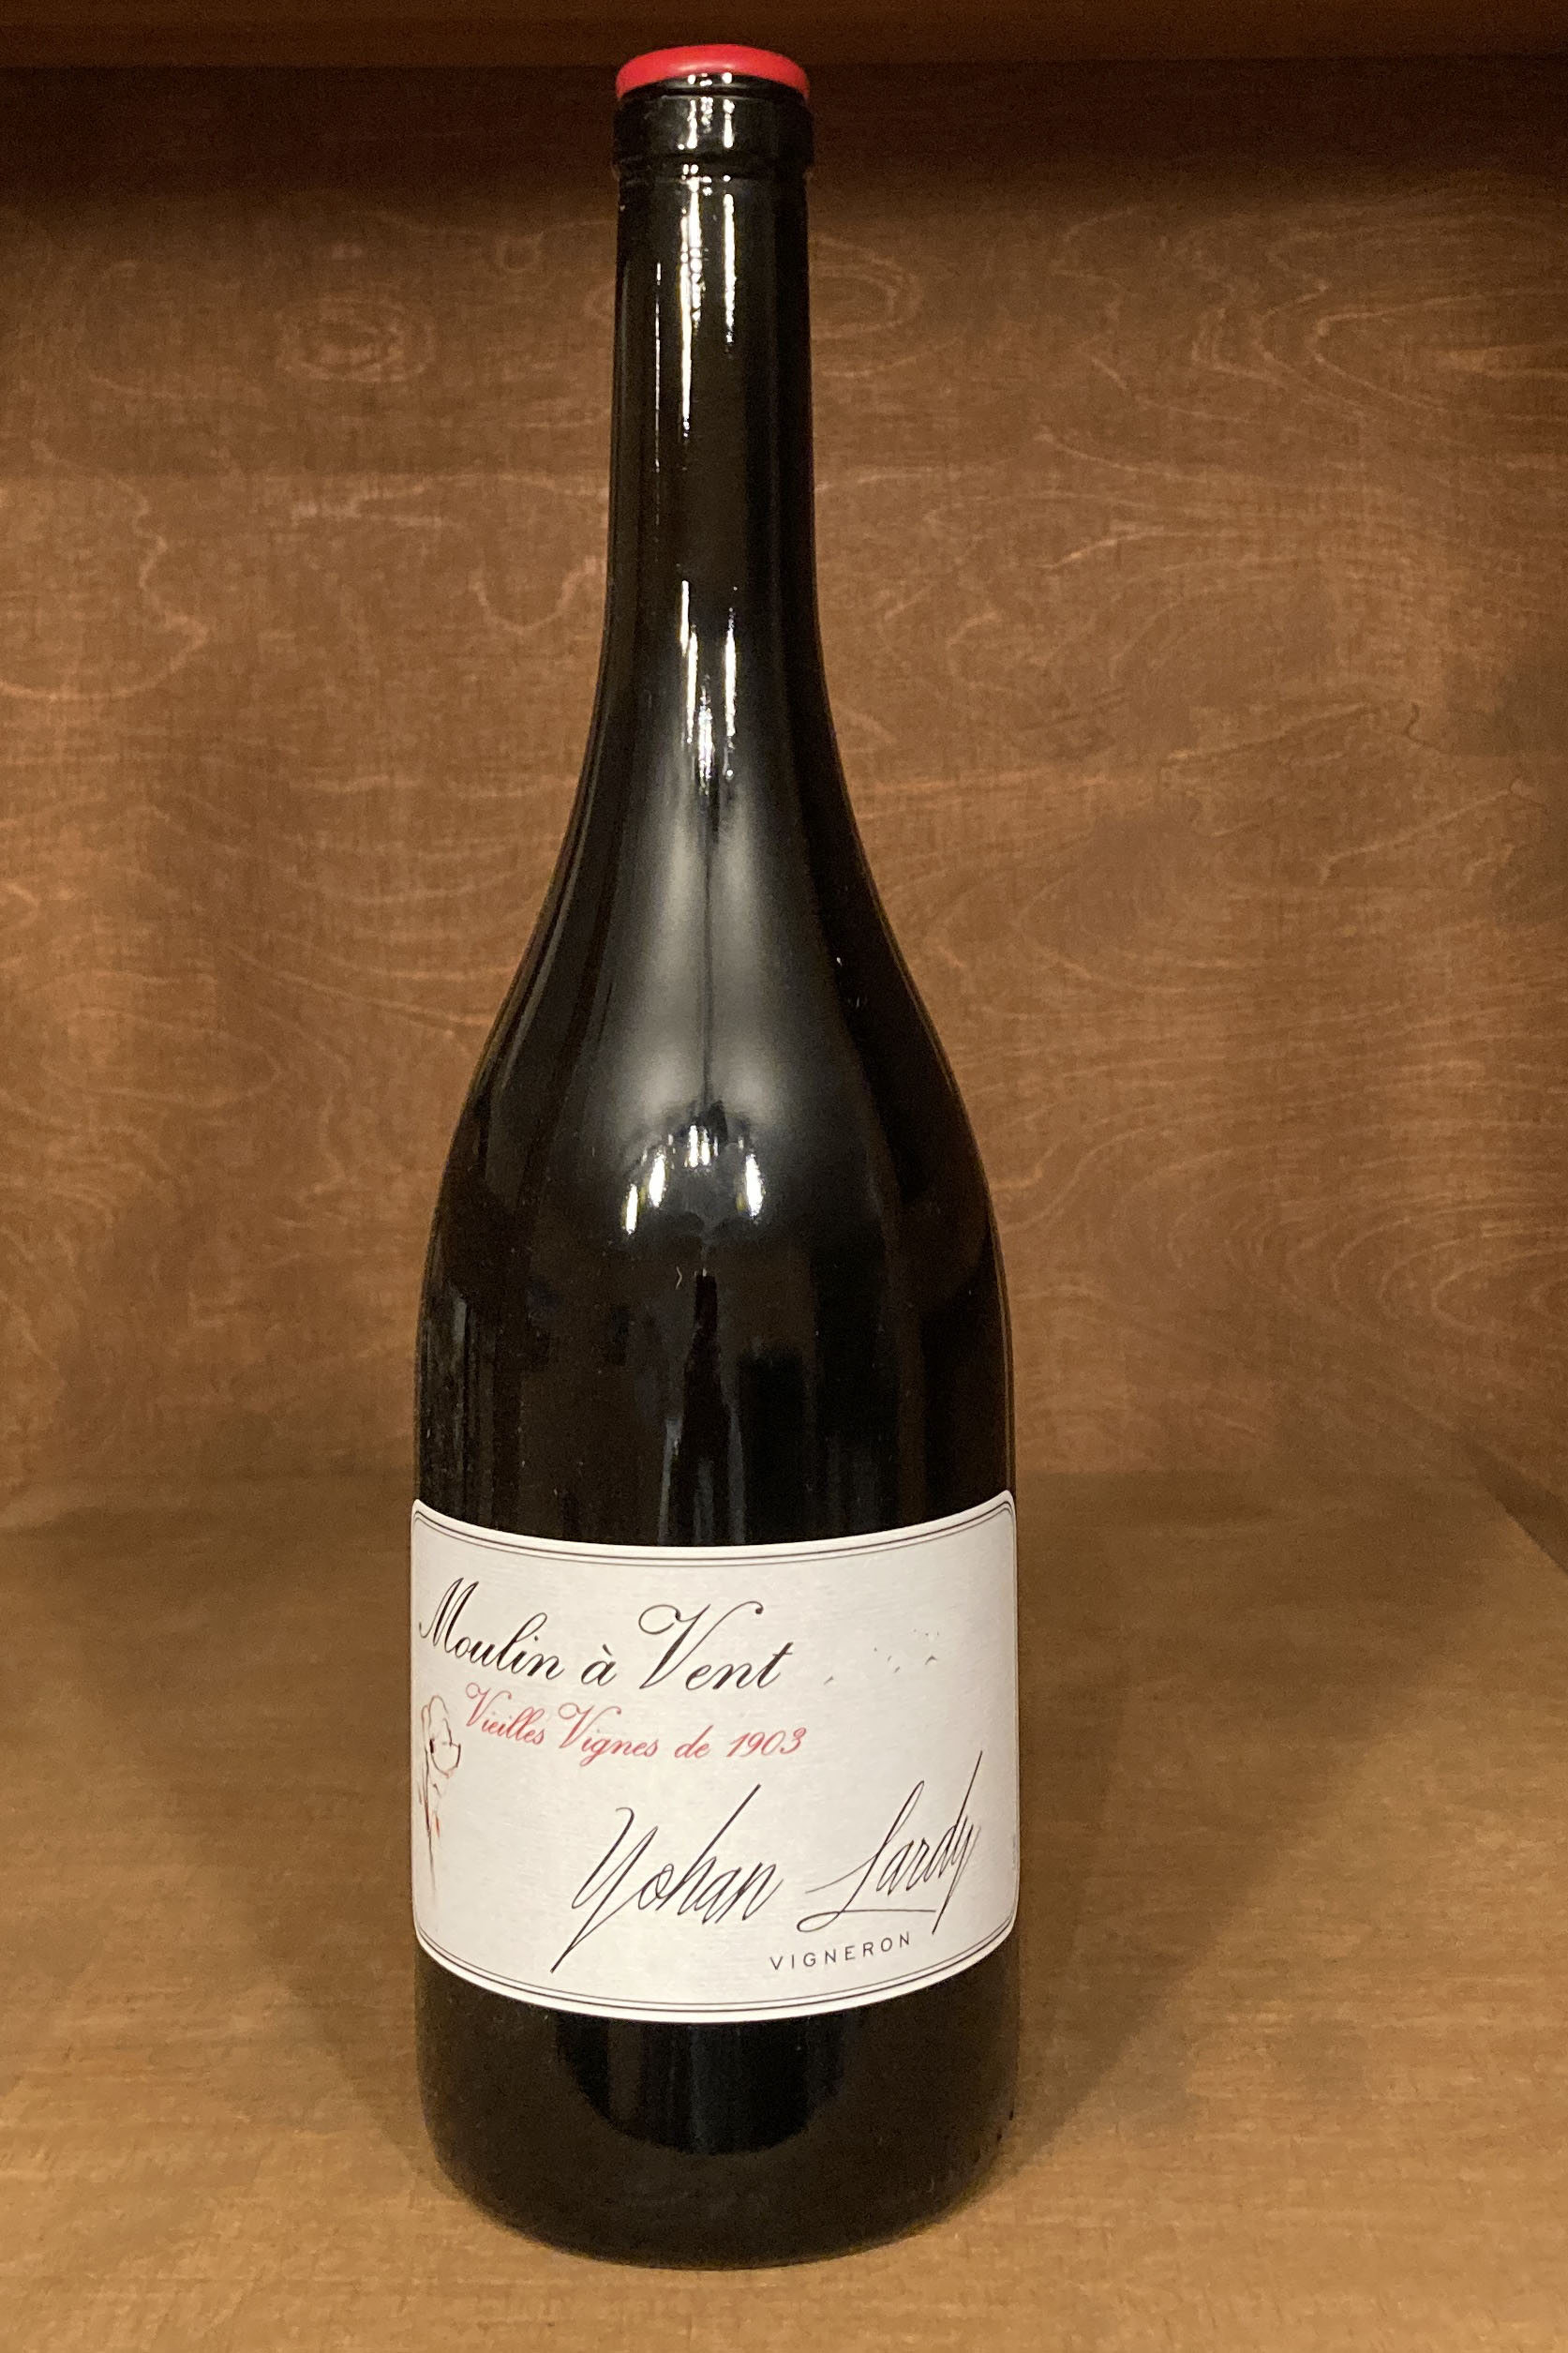 2021 Moulin-à-Vent Vieilles Vignes de 1903, Yohan Lardy, Beaujolais